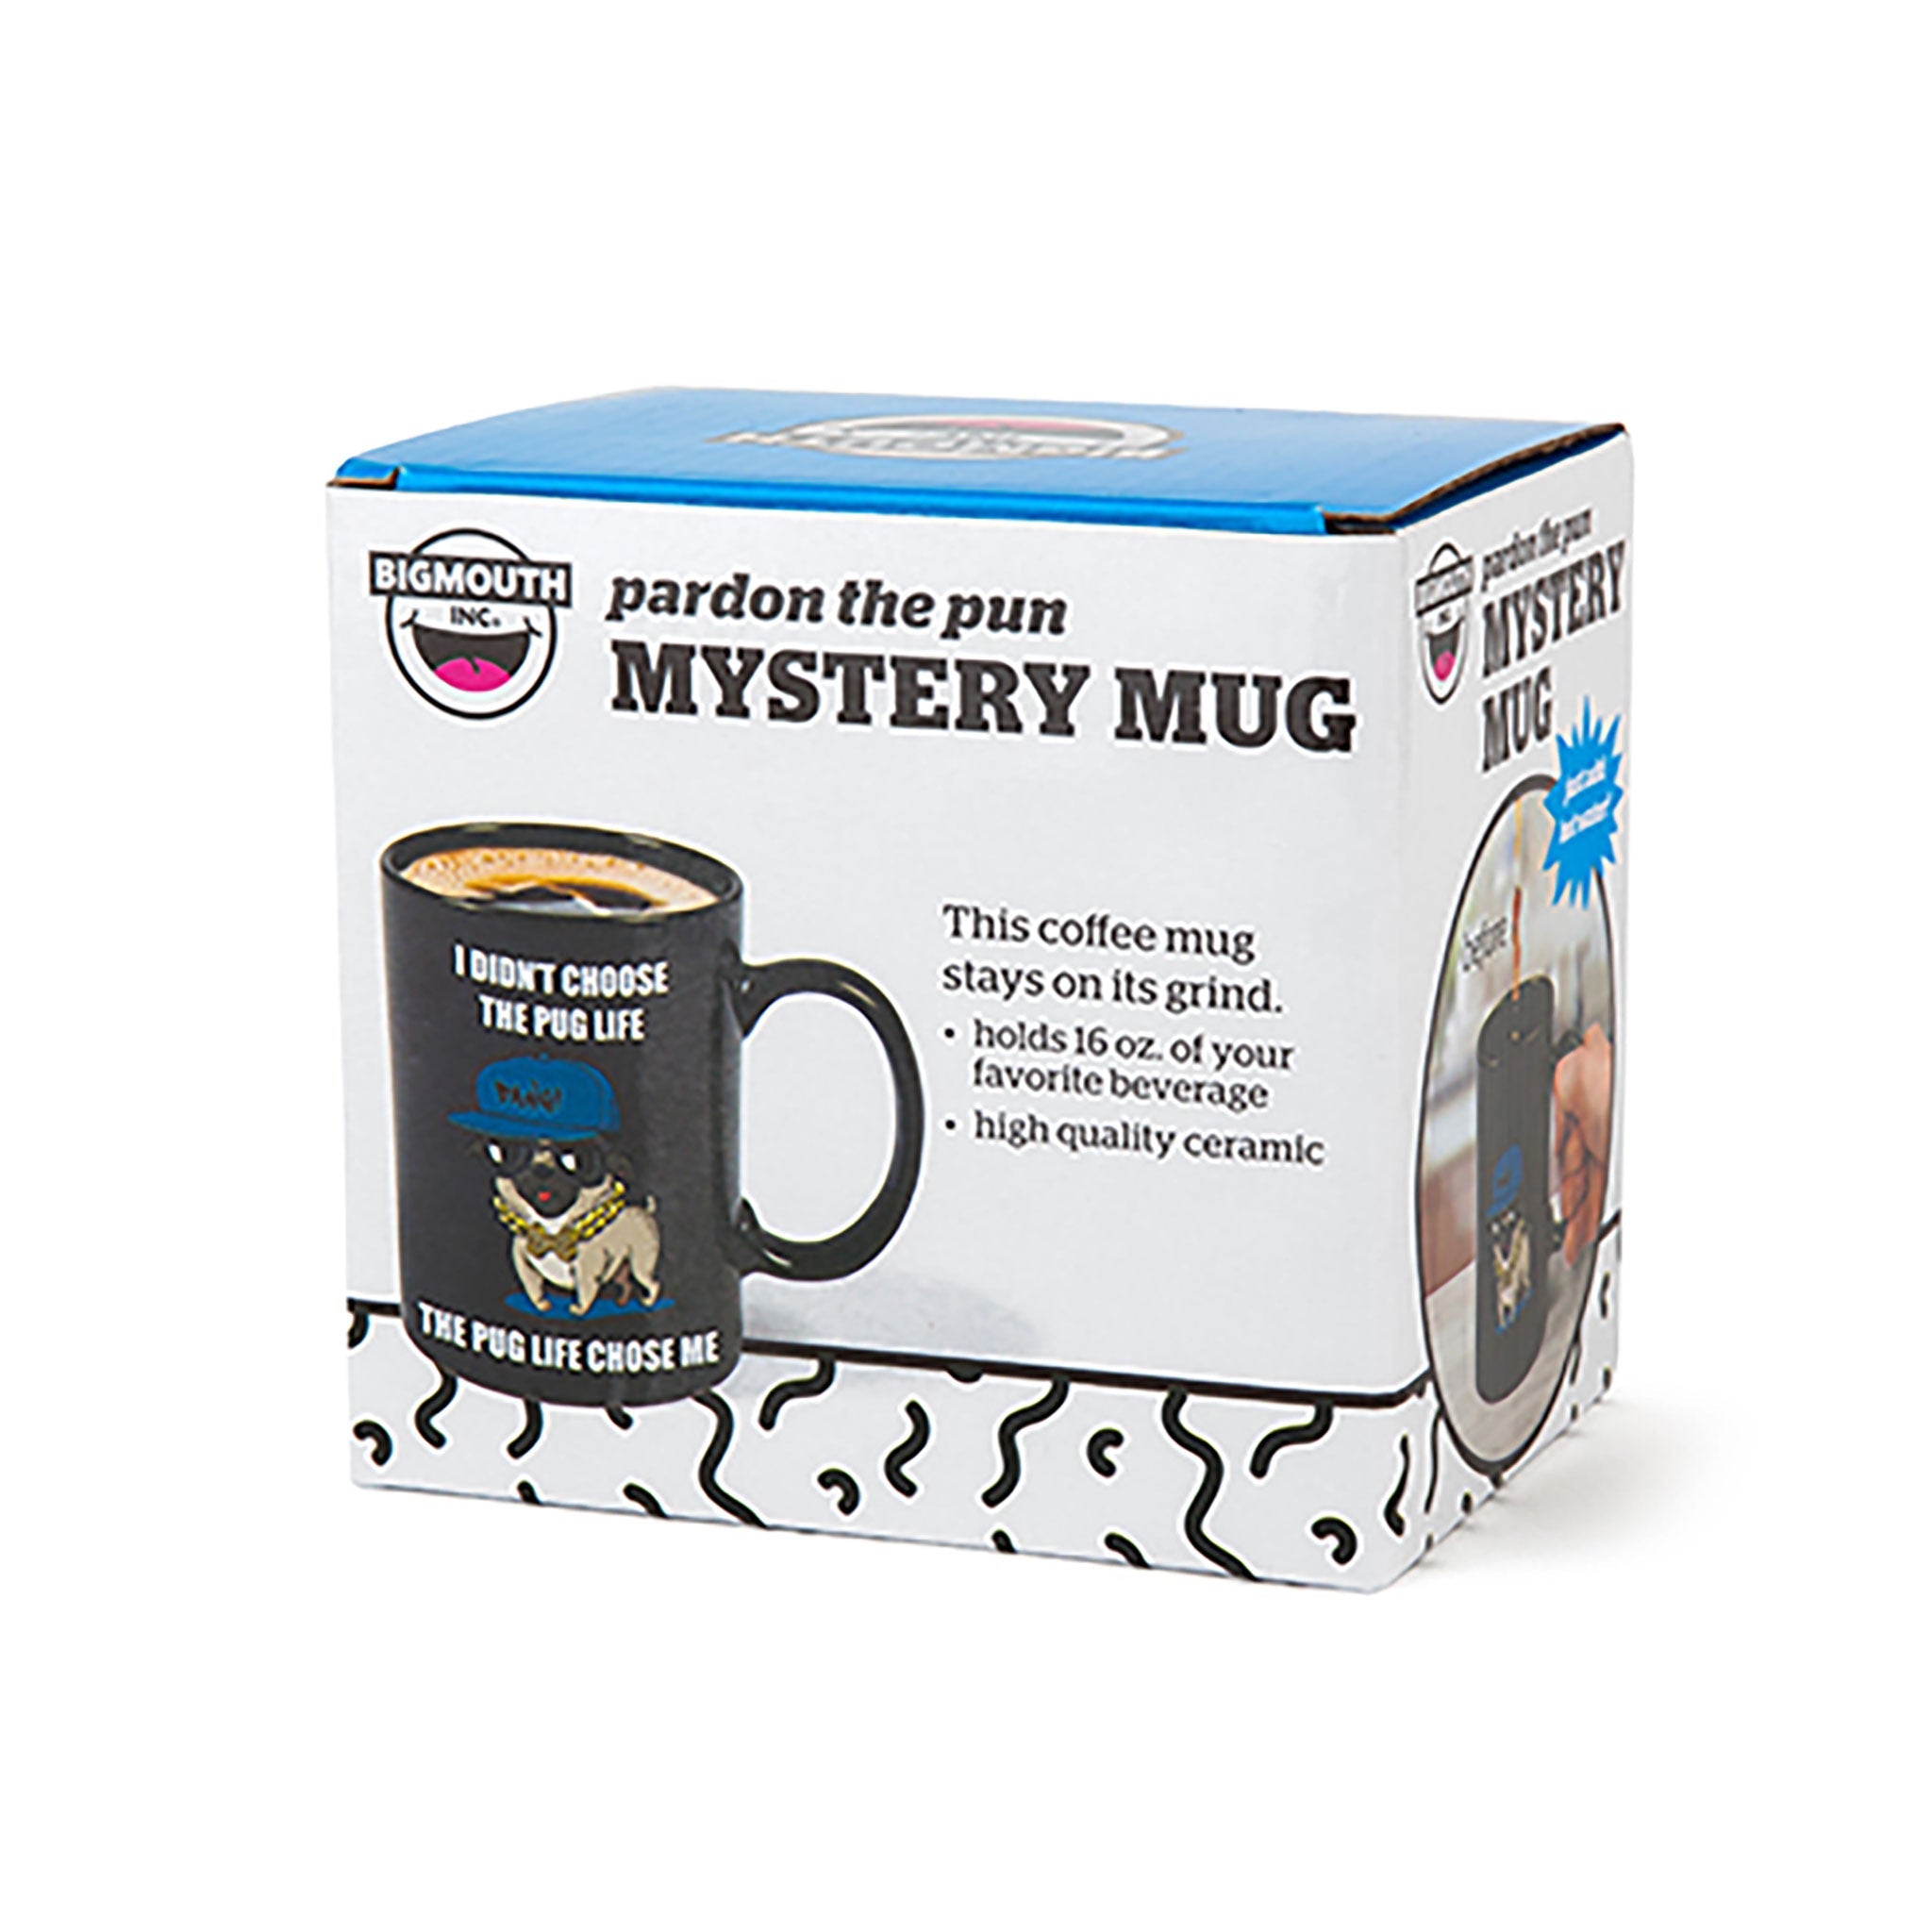 The Color Changing Pug Mug